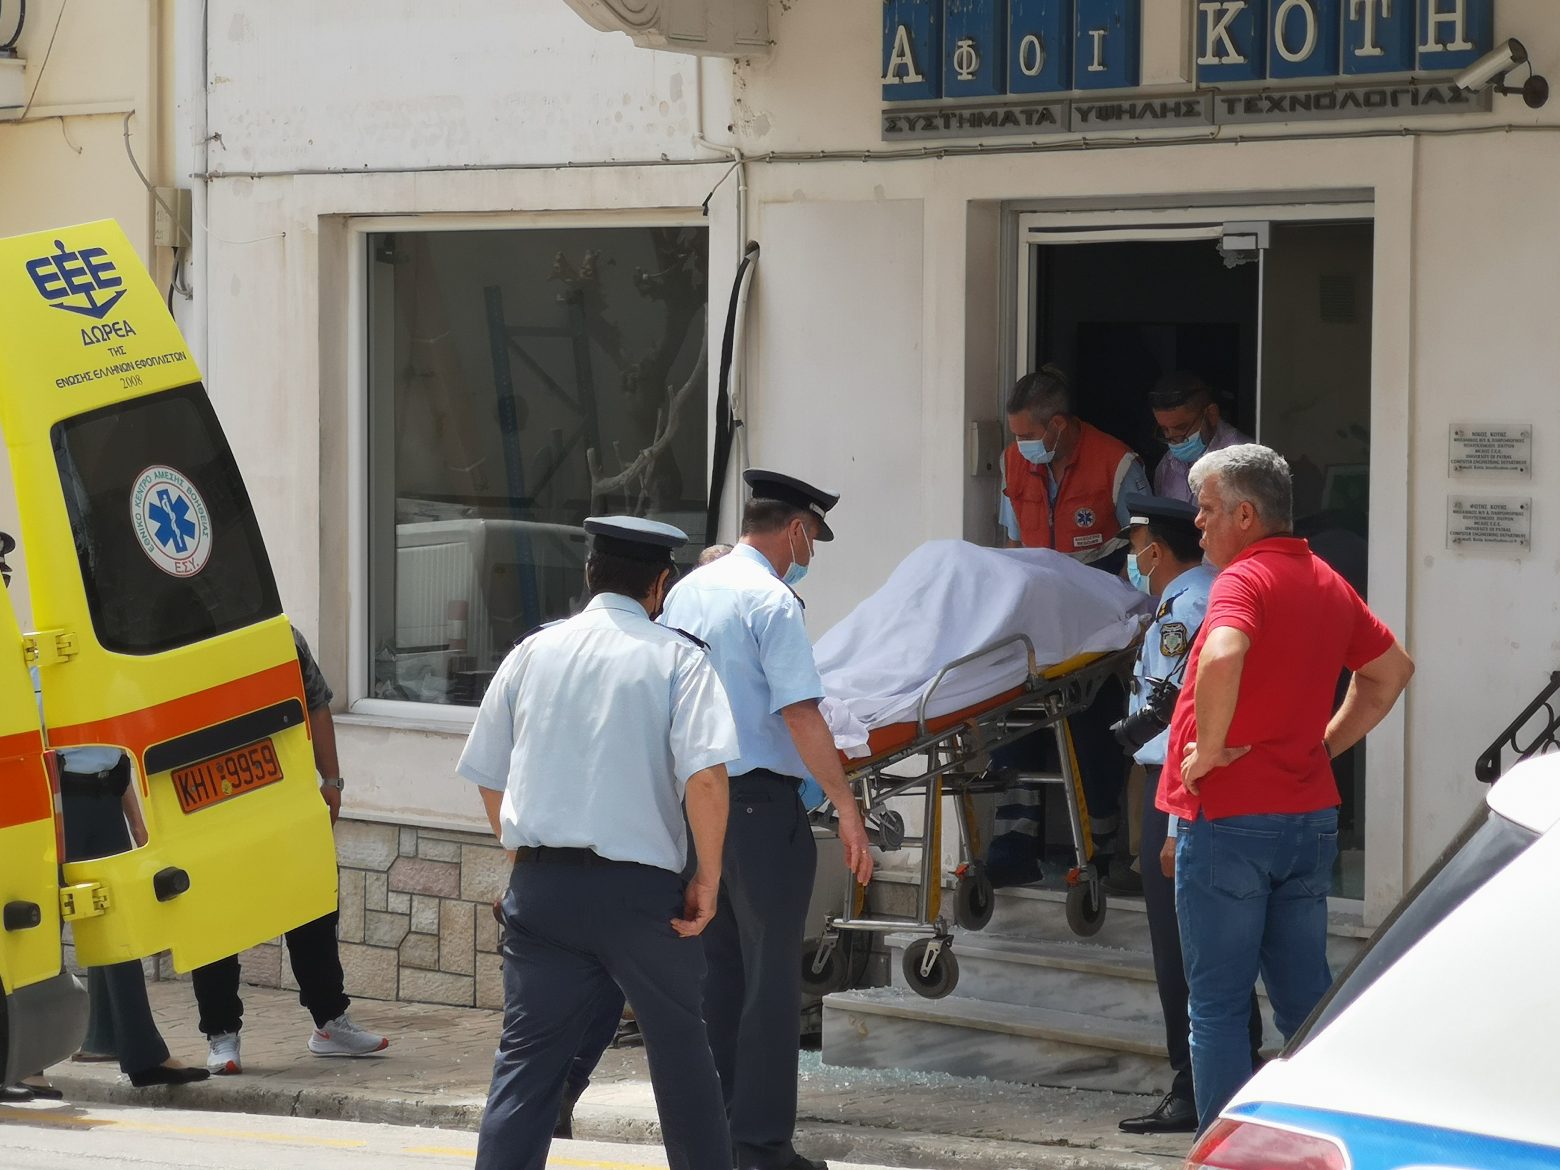 Ζάκυνθος: Νεκρός από πυροβολισμούς επιχειρηματίας - Είχε γλιτώσει παλιότερα από δολοφονική ενέδρα